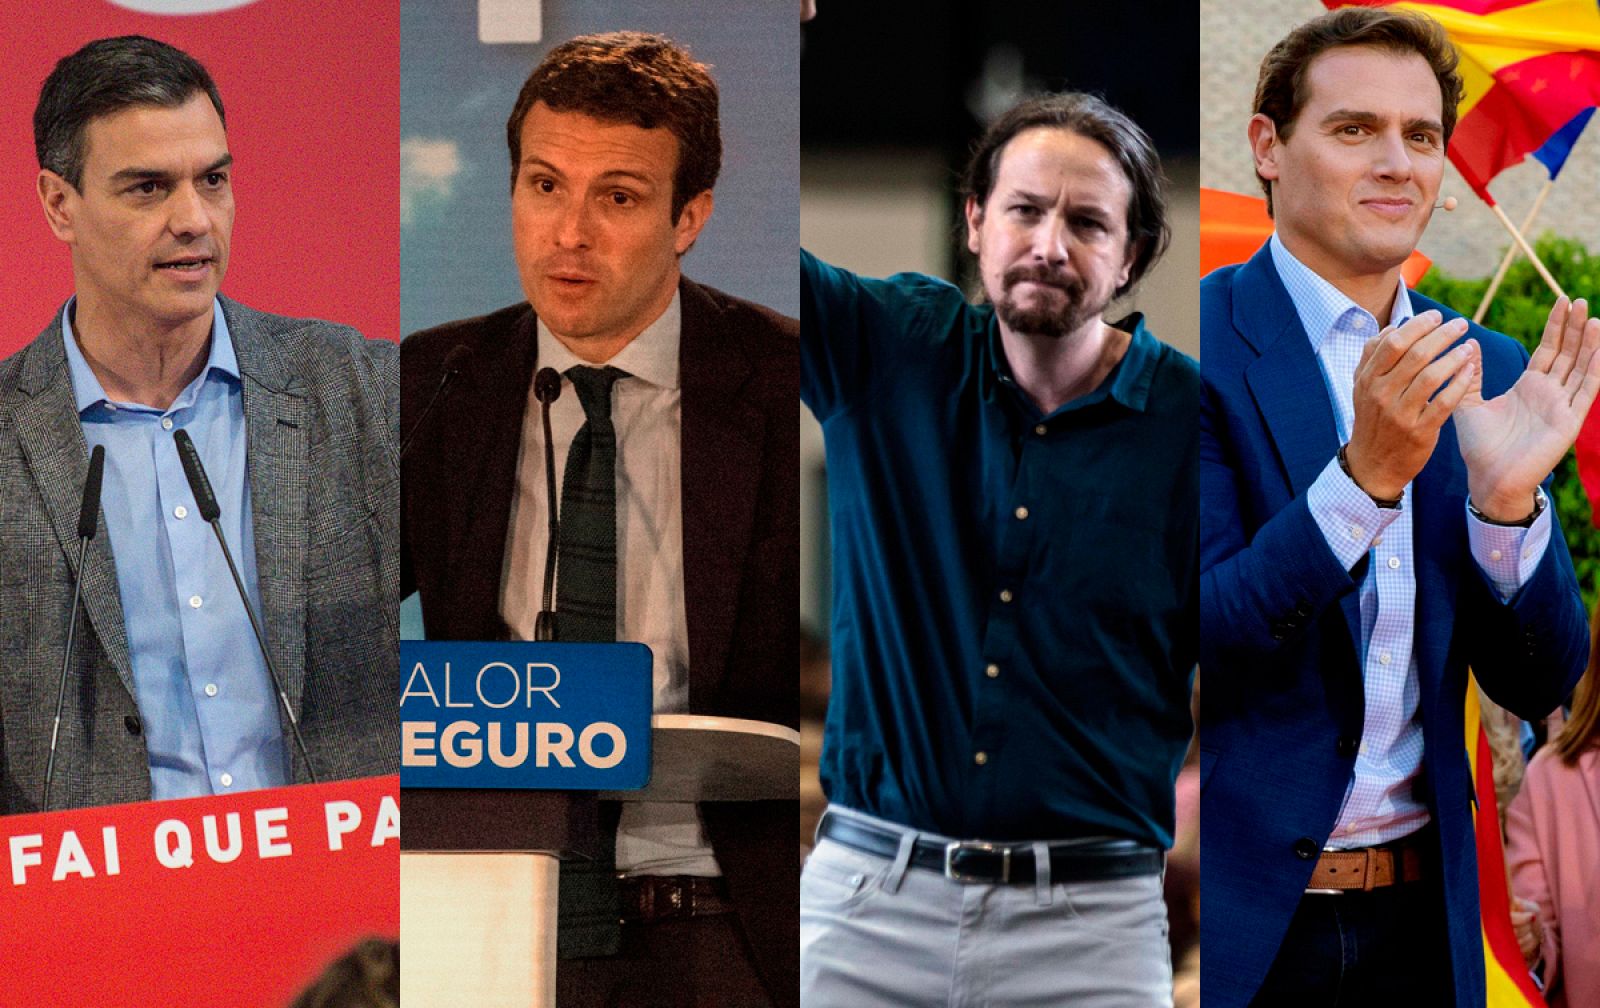 Elecciones 2019: Debate a cuatro - RTVE propone el 23 de abril y PP, Cs y Podemos critican la fecha